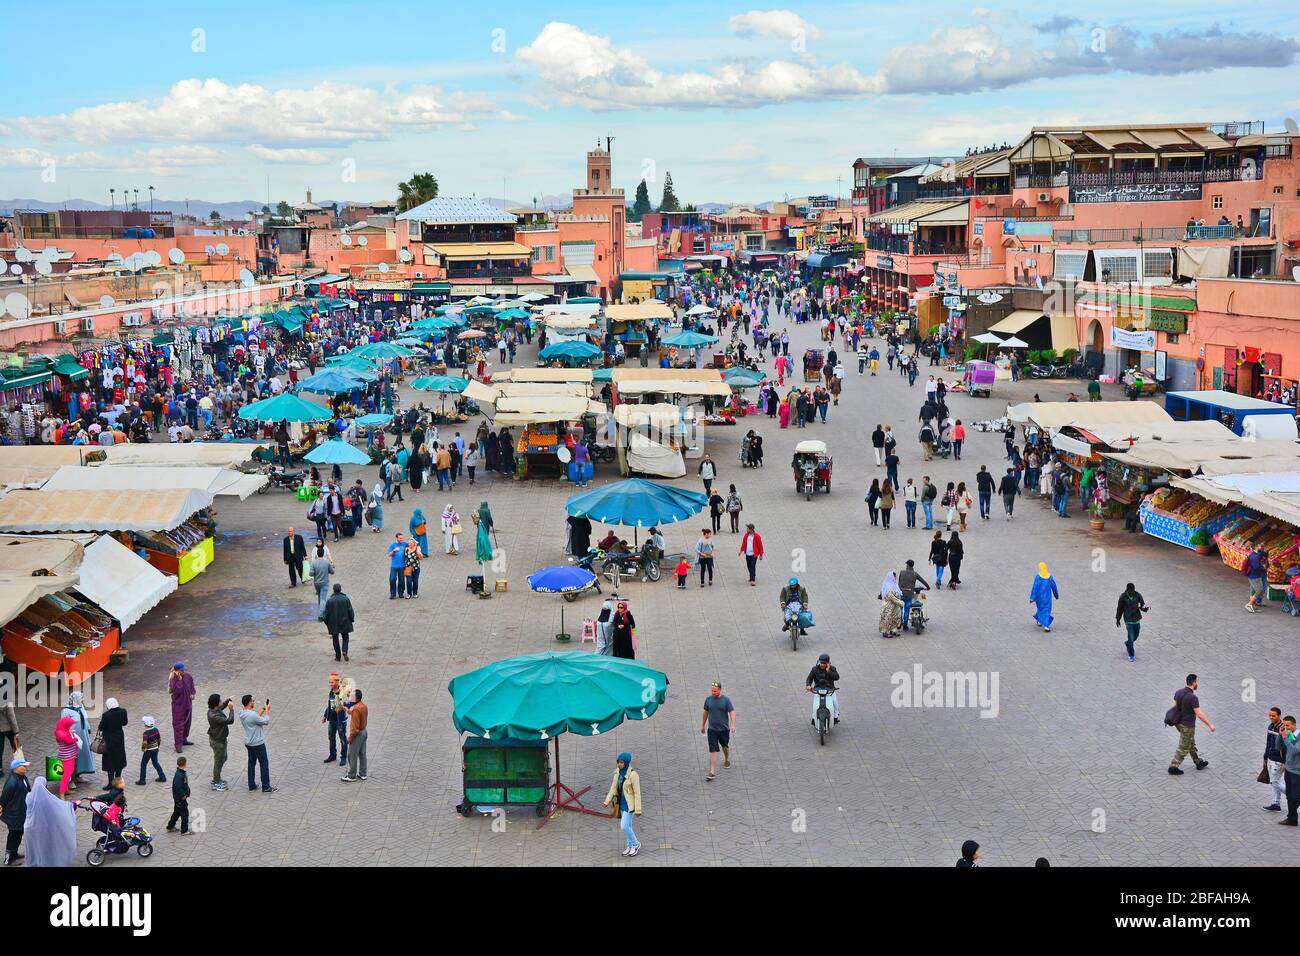 Marrakesch, Marokko - 22. November 2014: Menschenmenge von nicht identifizierten Menschen, Straßenhändlern, Künstlern, Geschäften und Kiosken auf Djemaa el-Fna, UNESCO-Welterbe Stockfoto